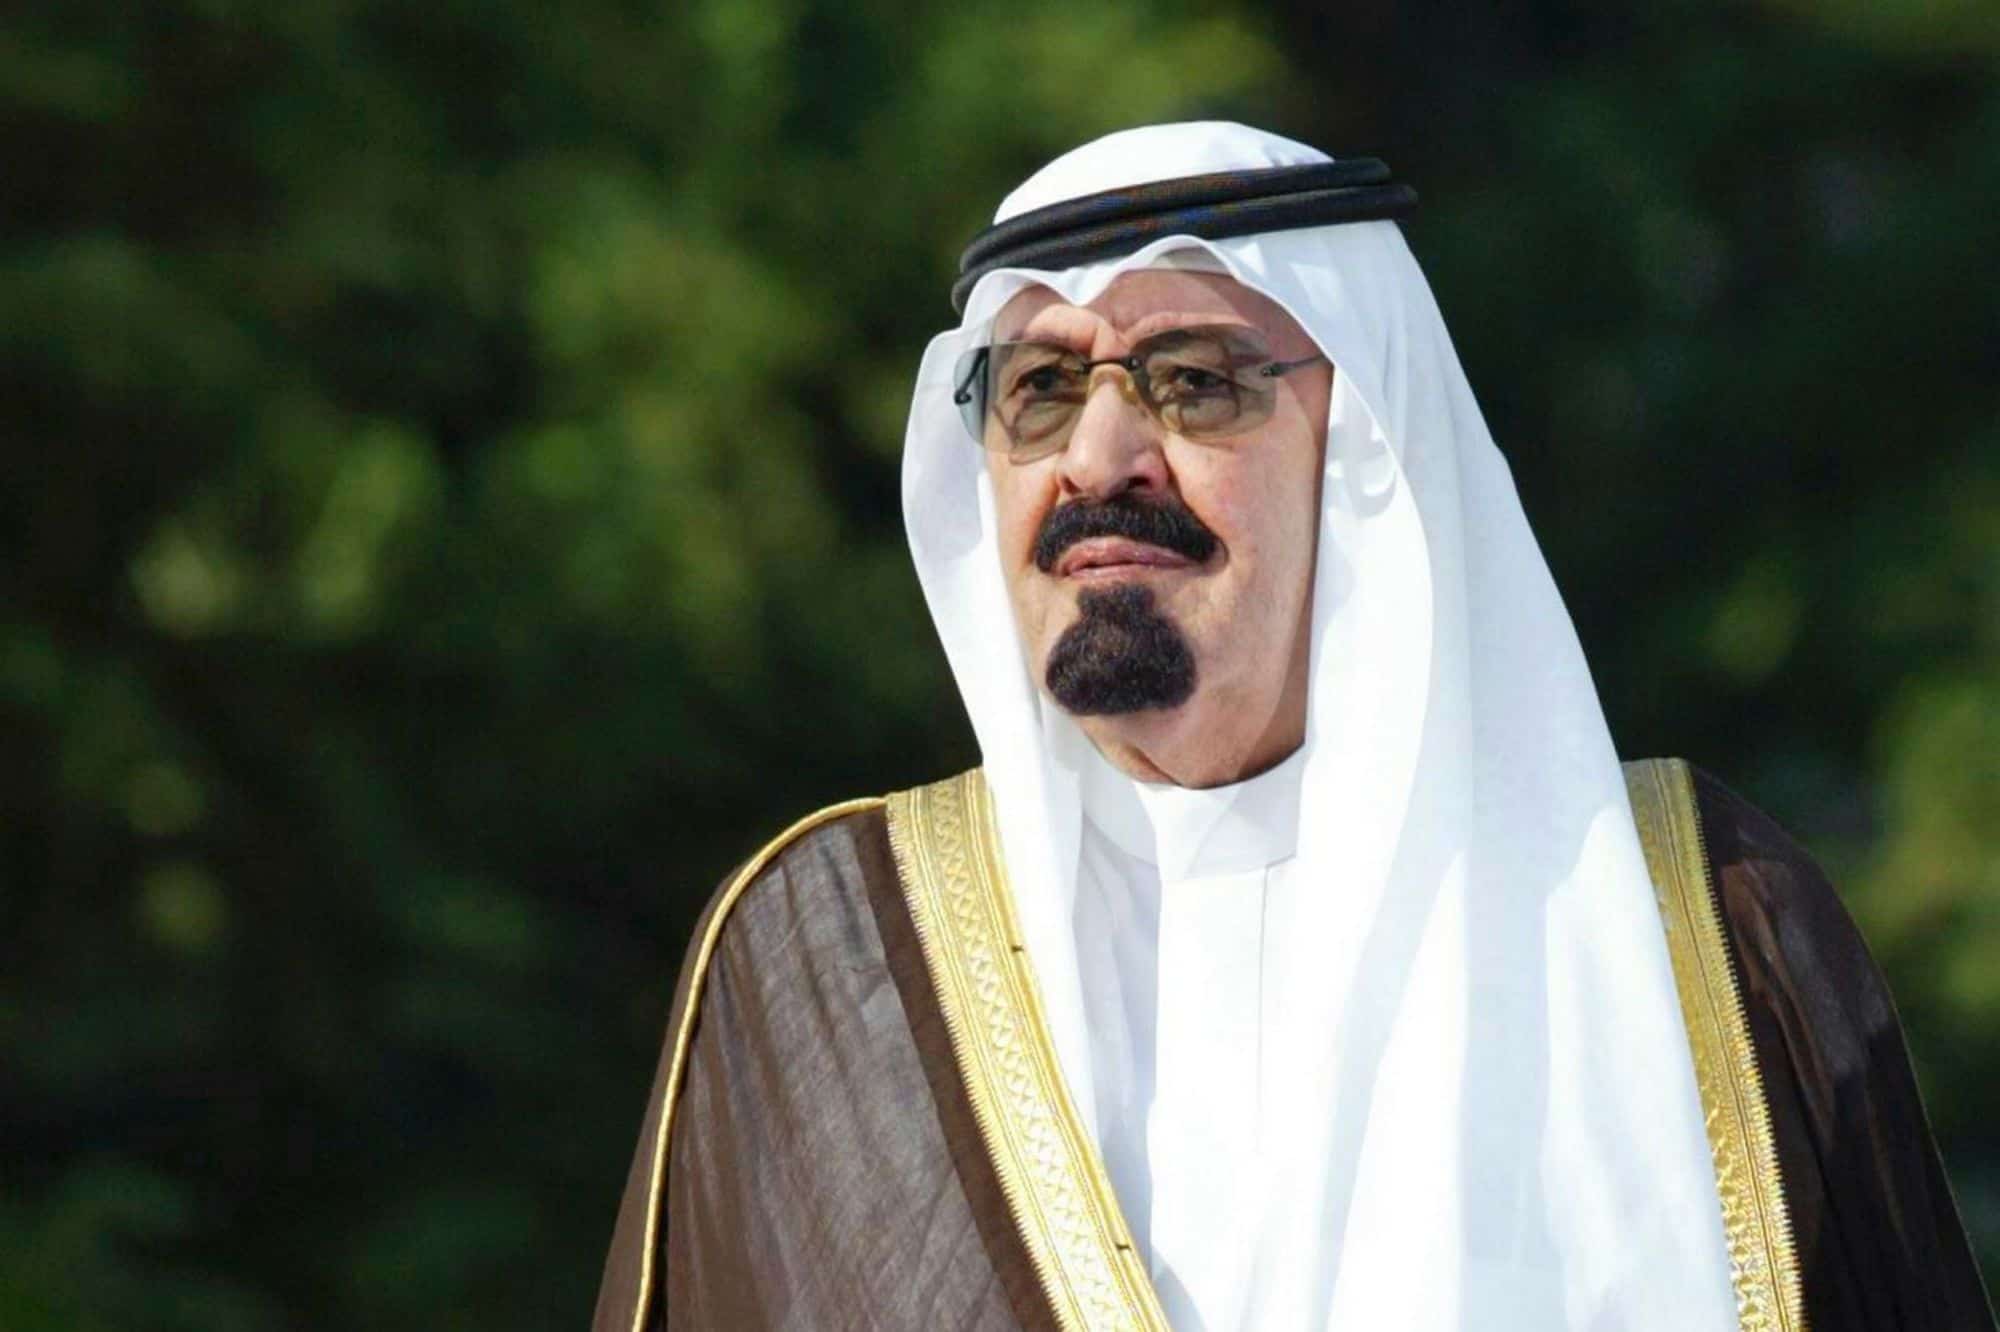 متى مات الملك عبد الله بن عبد العزيز وما أهم إنجازاته في السعودية؟